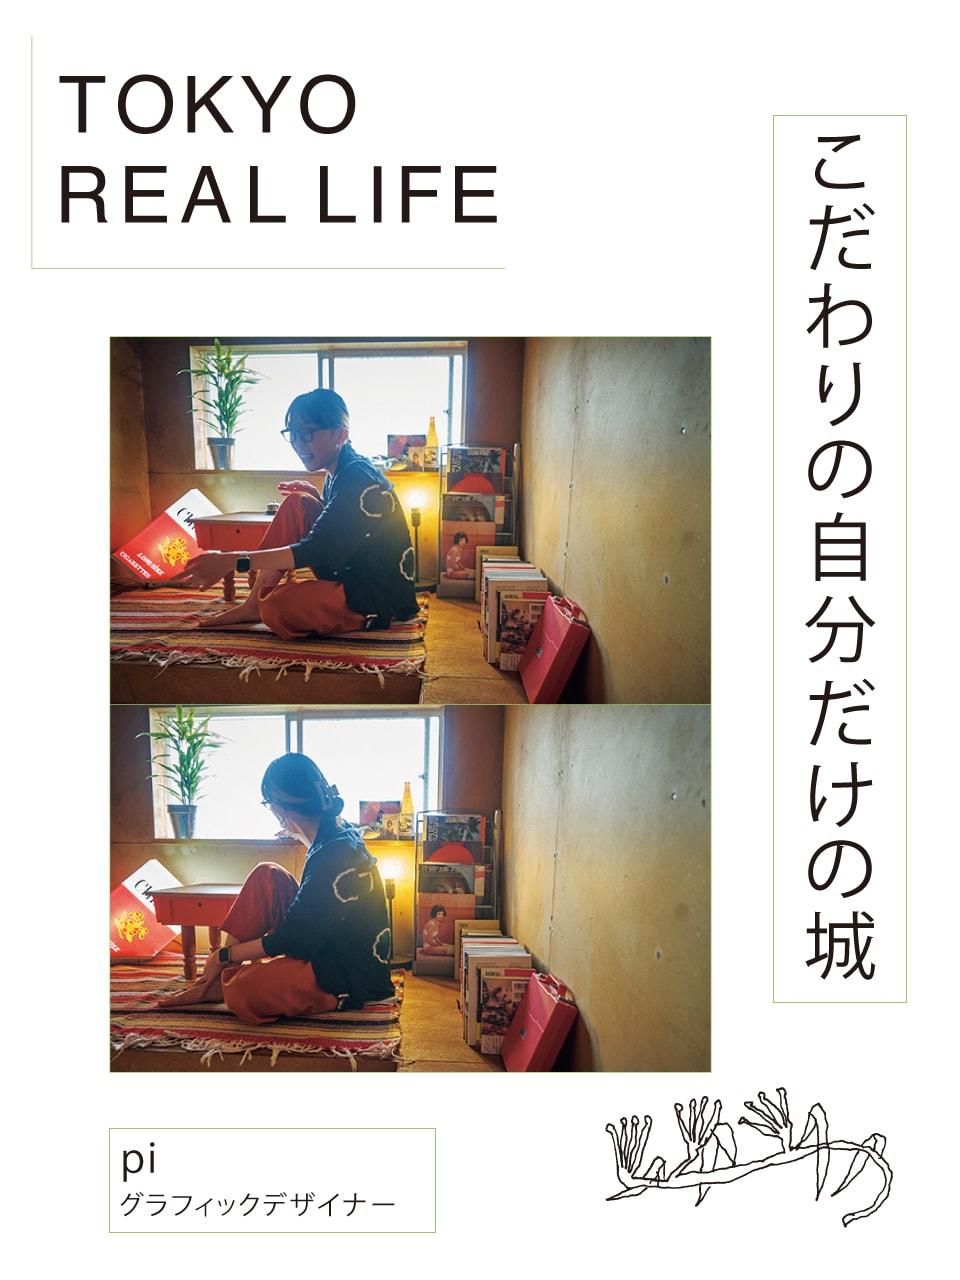 「進化し続ける こだわりのDIYハウス」【 TOKYO REAL LIFE vol.13 piさん】